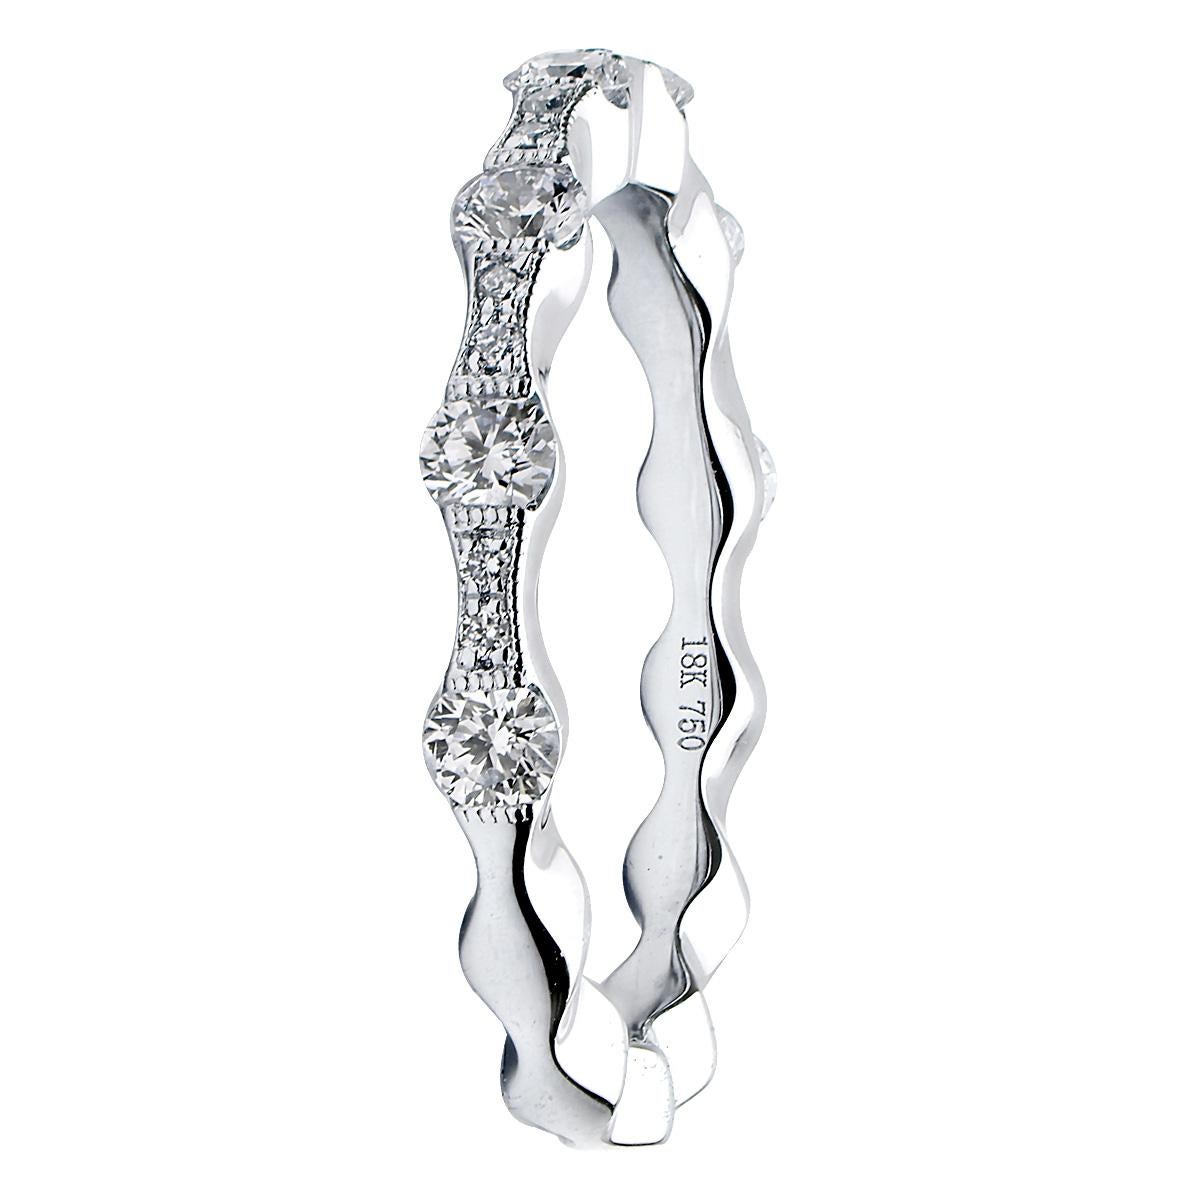 Dieses wunderschöne Diamantband hat 2 Größen von Diamanten der Farbe VS2, G, um sein schönes Design zu schaffen. Auf zwei kleinere Diamanten folgt ein größerer Diamant, so dass das Band wie eine Welle wirkt. Es sind 19 Diamanten von insgesamt 0,50